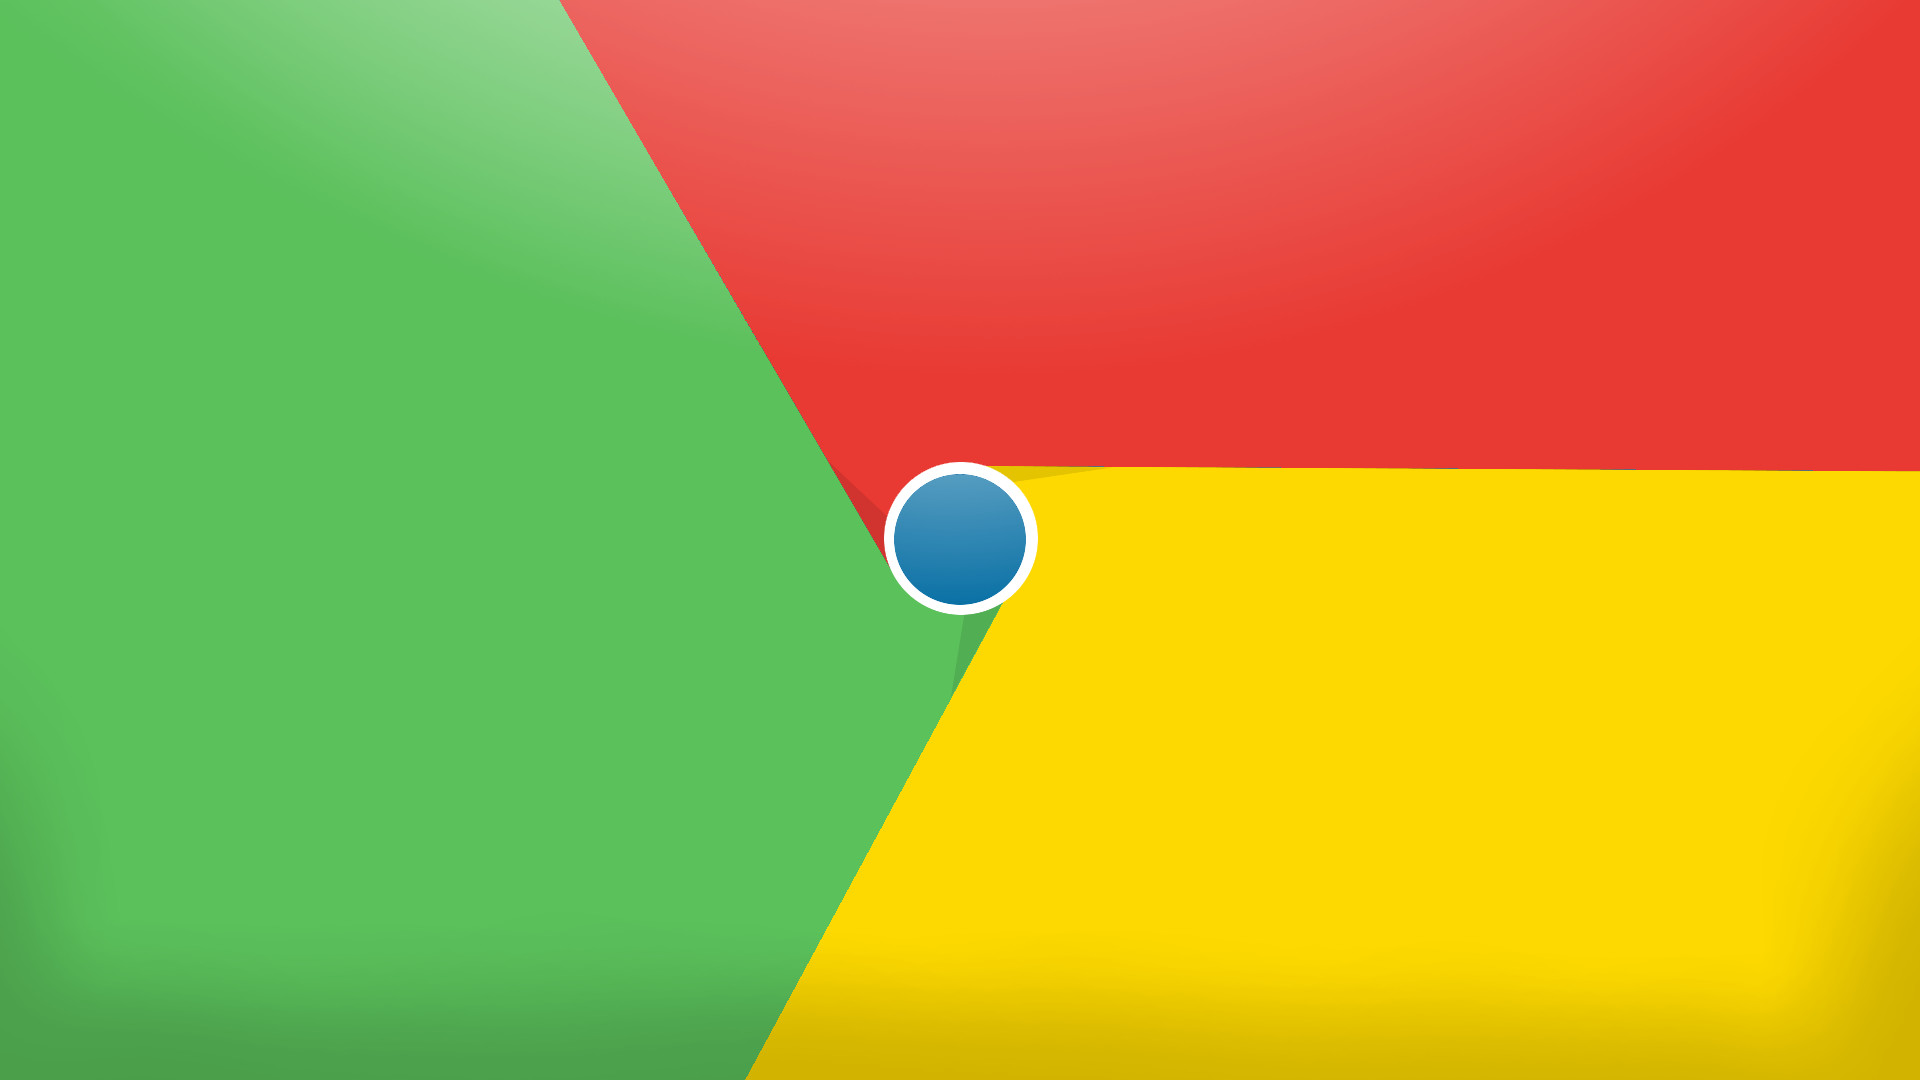 Google Desktop Background Image